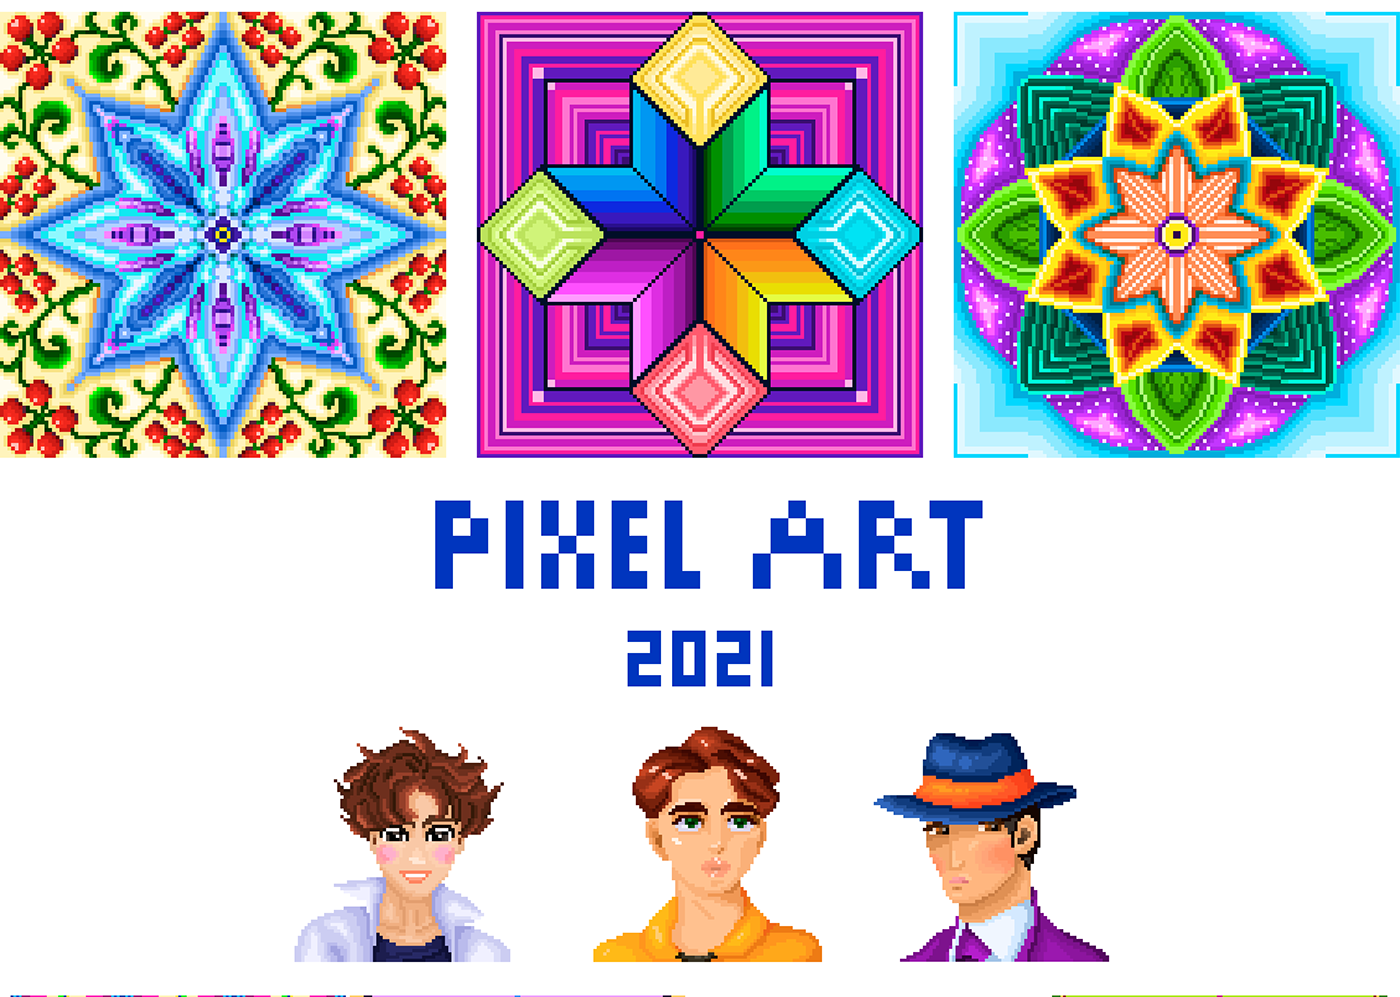 8bit artist artwork digital illustration Drawing  game ILLUSTRATION  mobile pixel Pixel art